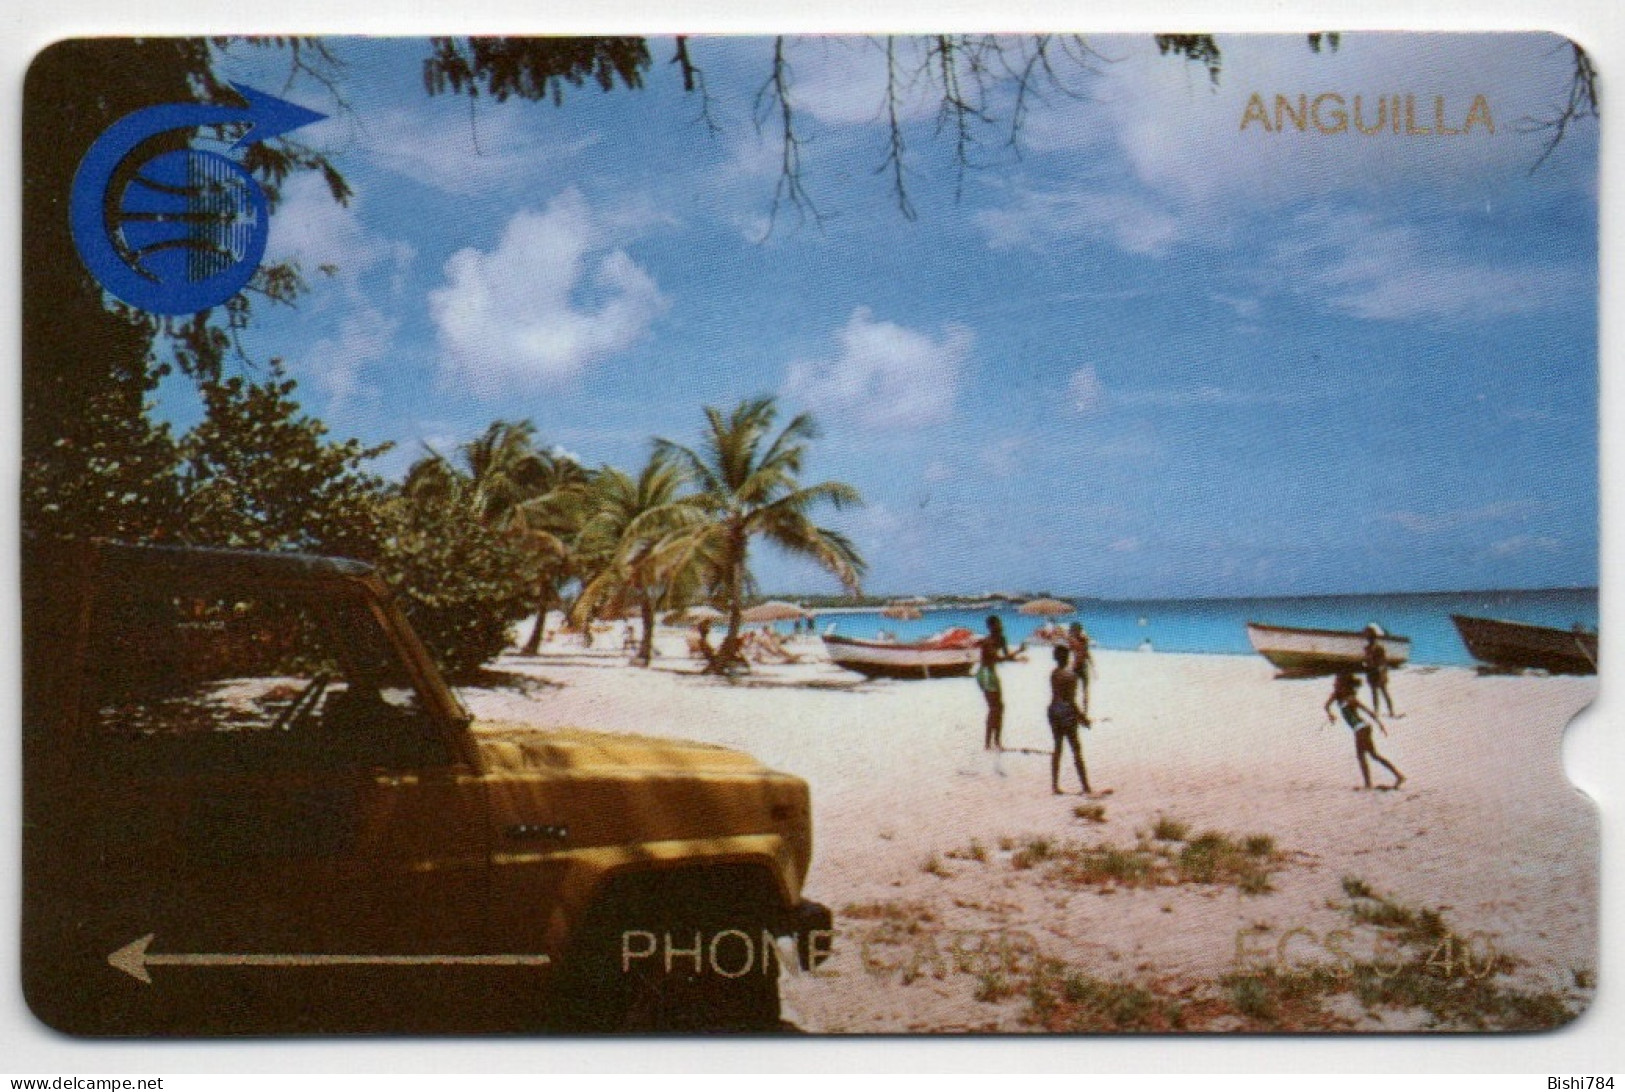 Anguilla - MEADS BAY $5.40 - ANG-1A (Leeward Islands Pack) - Anguilla